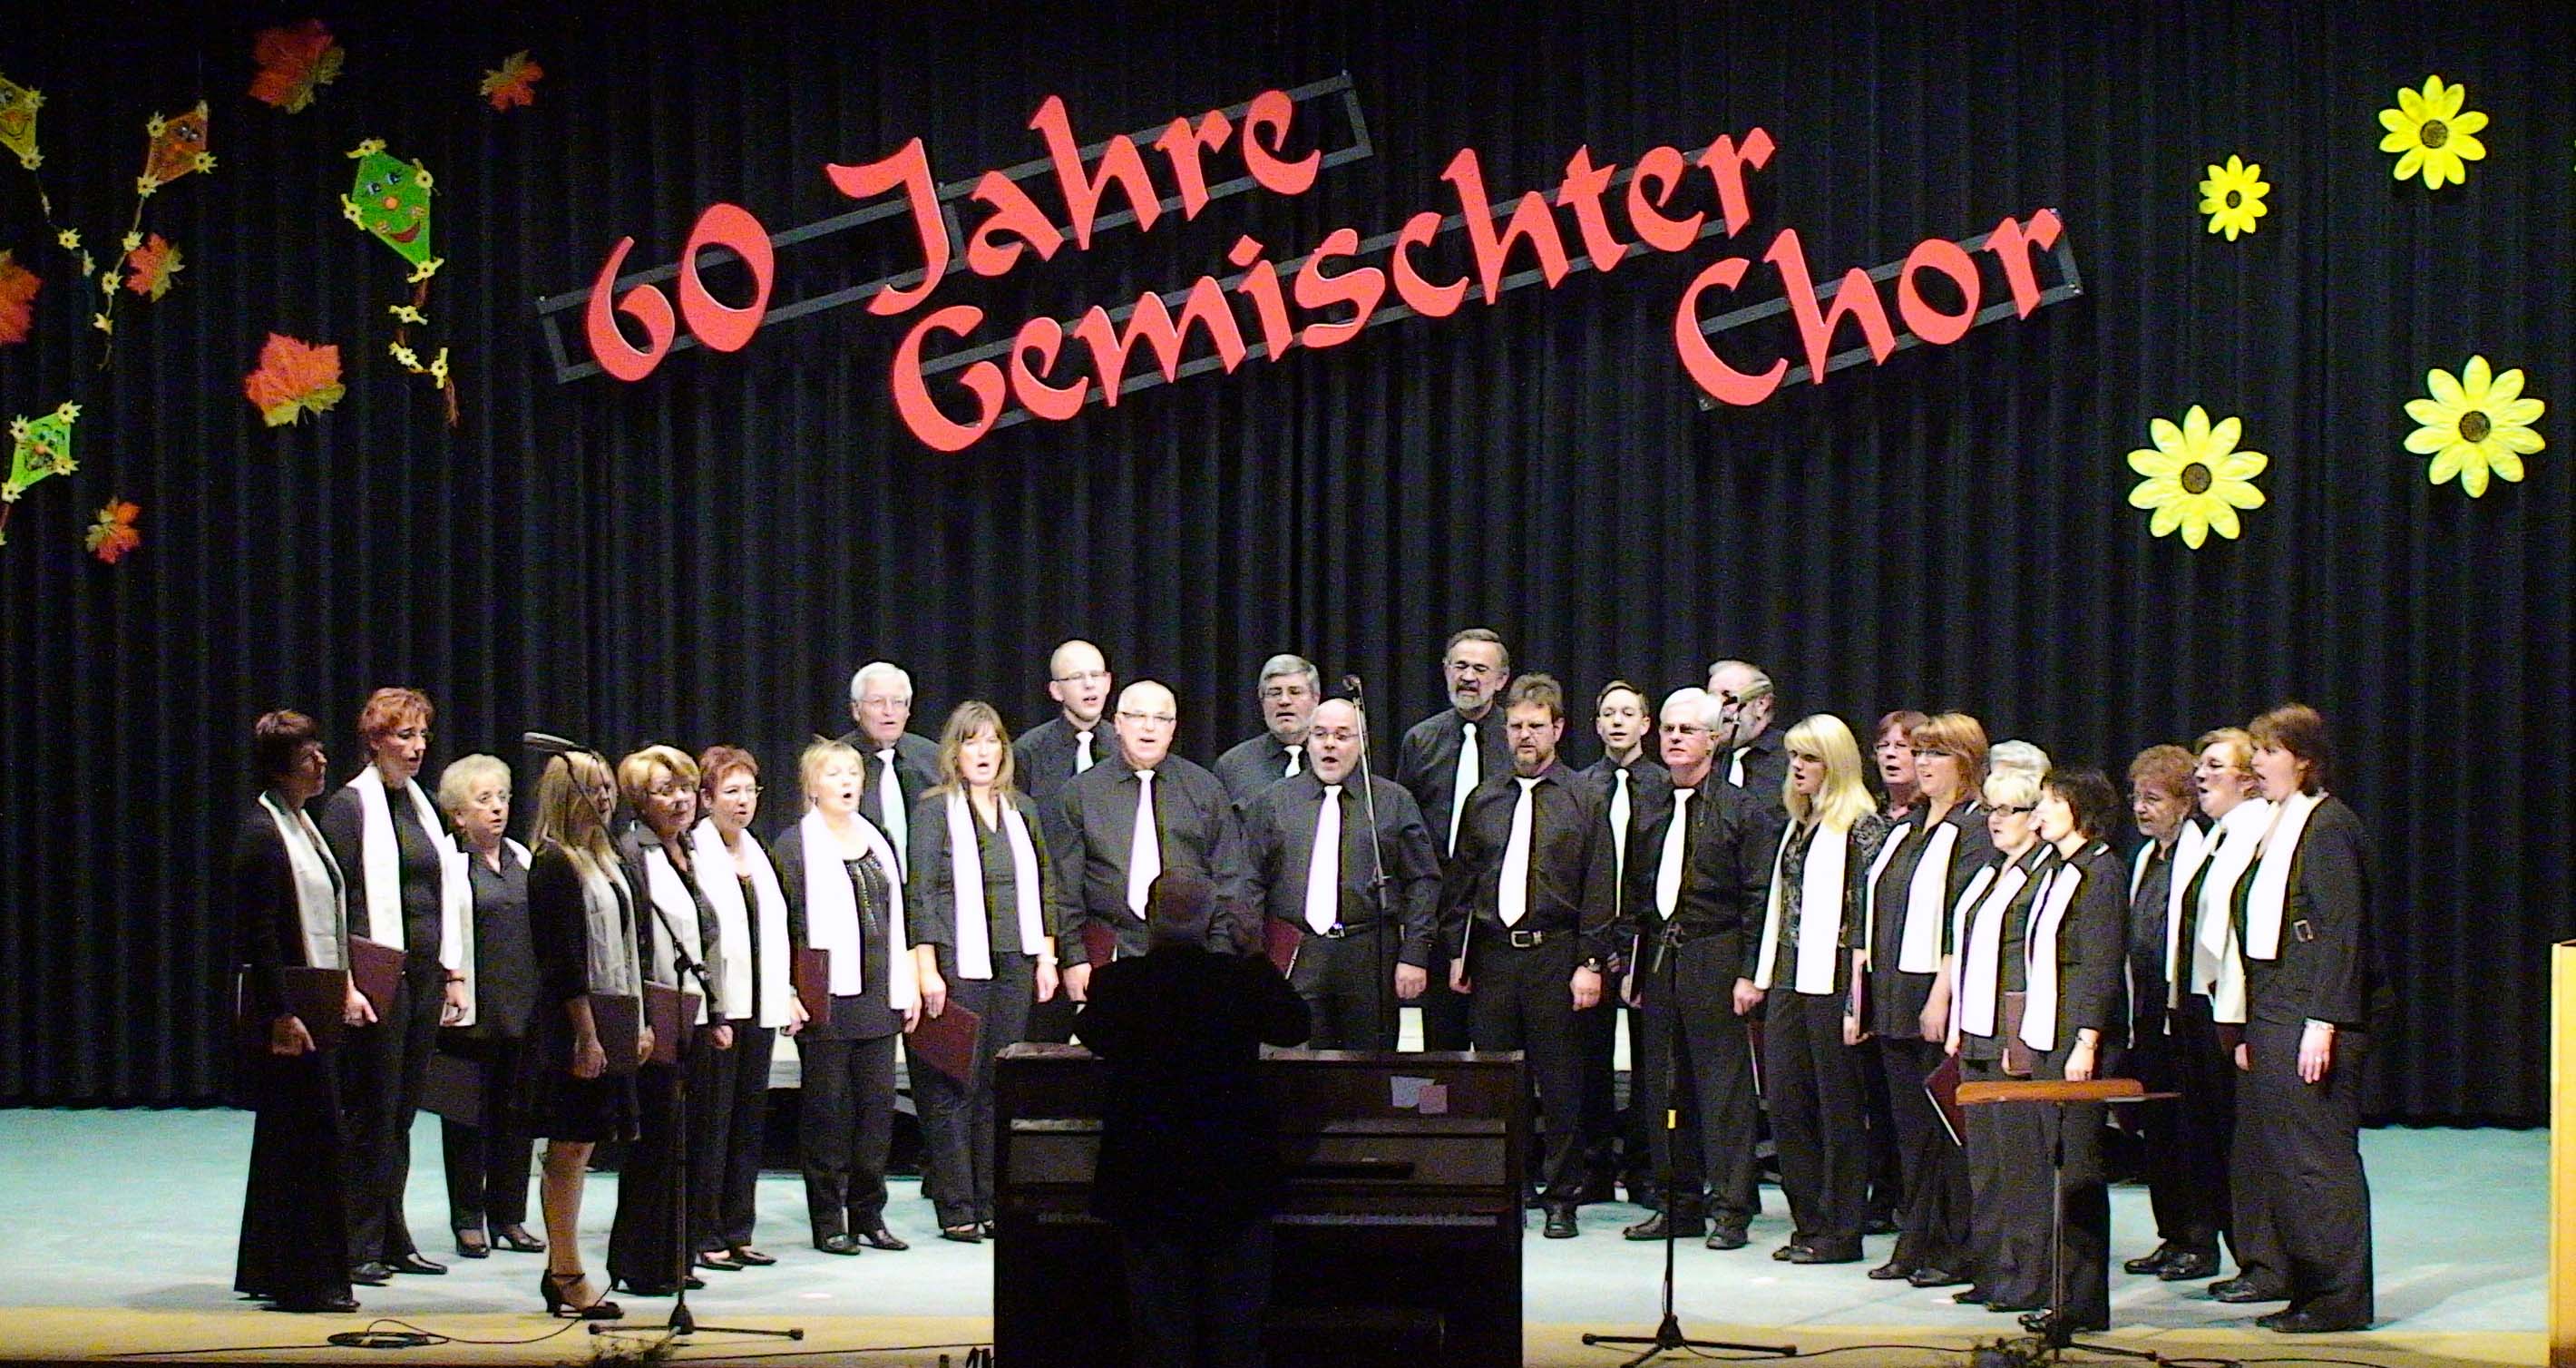 Gemischter Chor Niedermittlau anl�sslich des 60 j�hrigen Vereinsjubil�ums